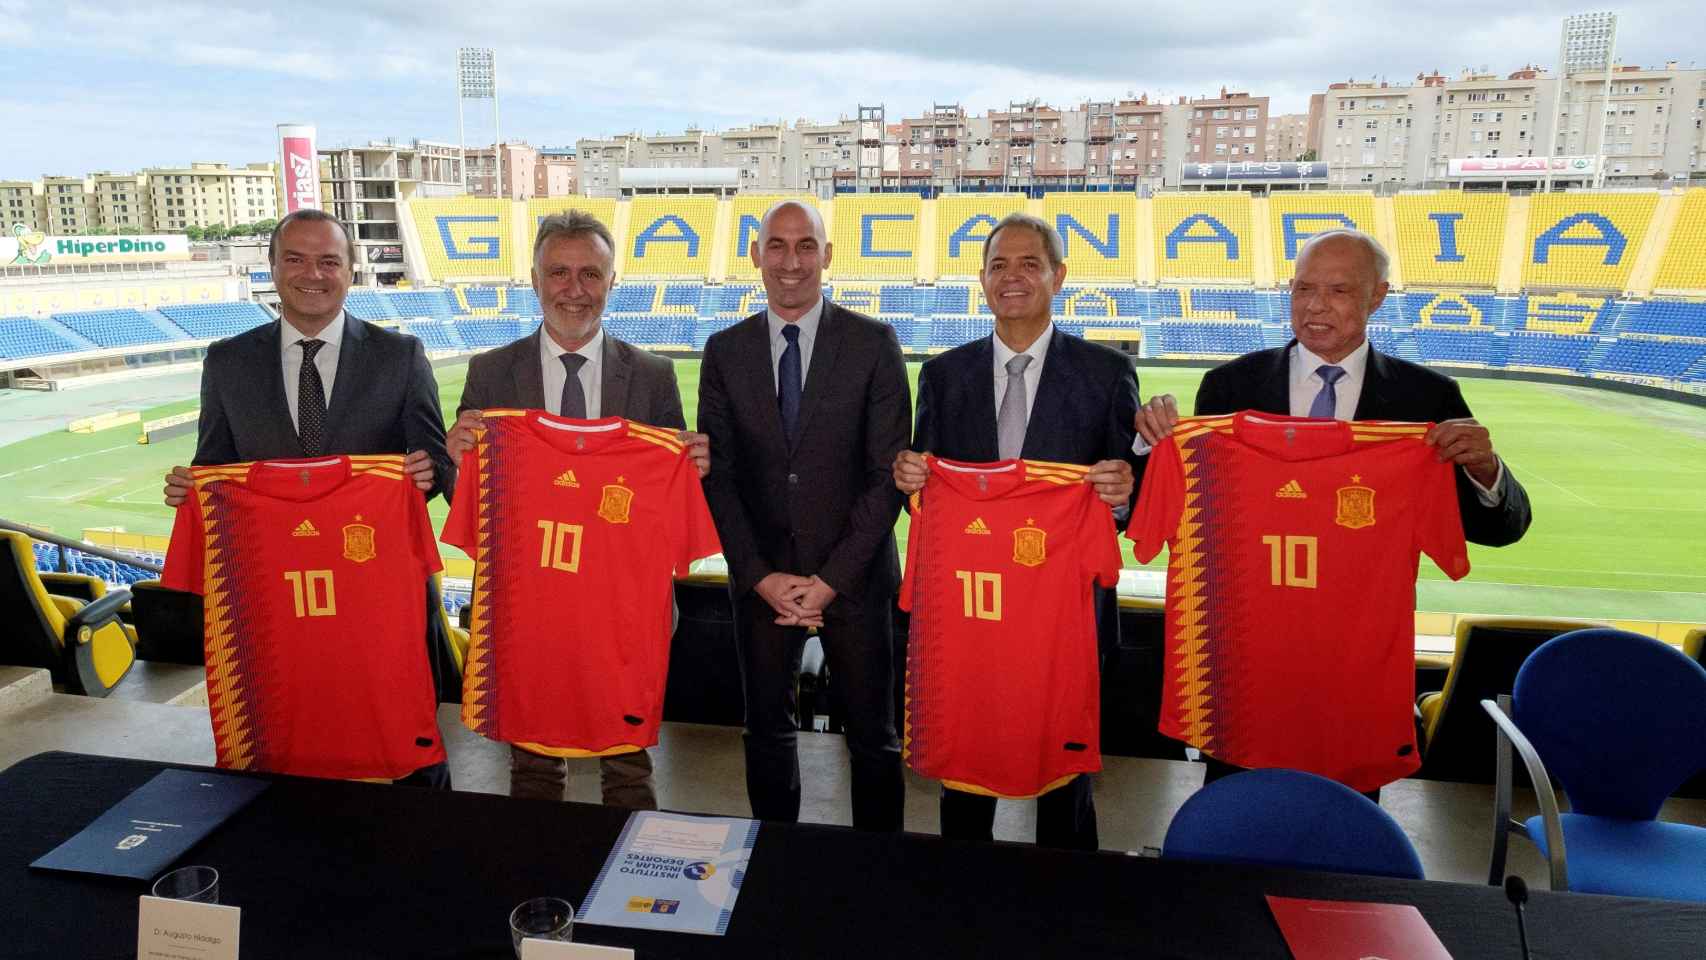 Presentación en rueda de prensa el partido amistoso que disputa España contra Bosnia el domingo 18 de noviembre